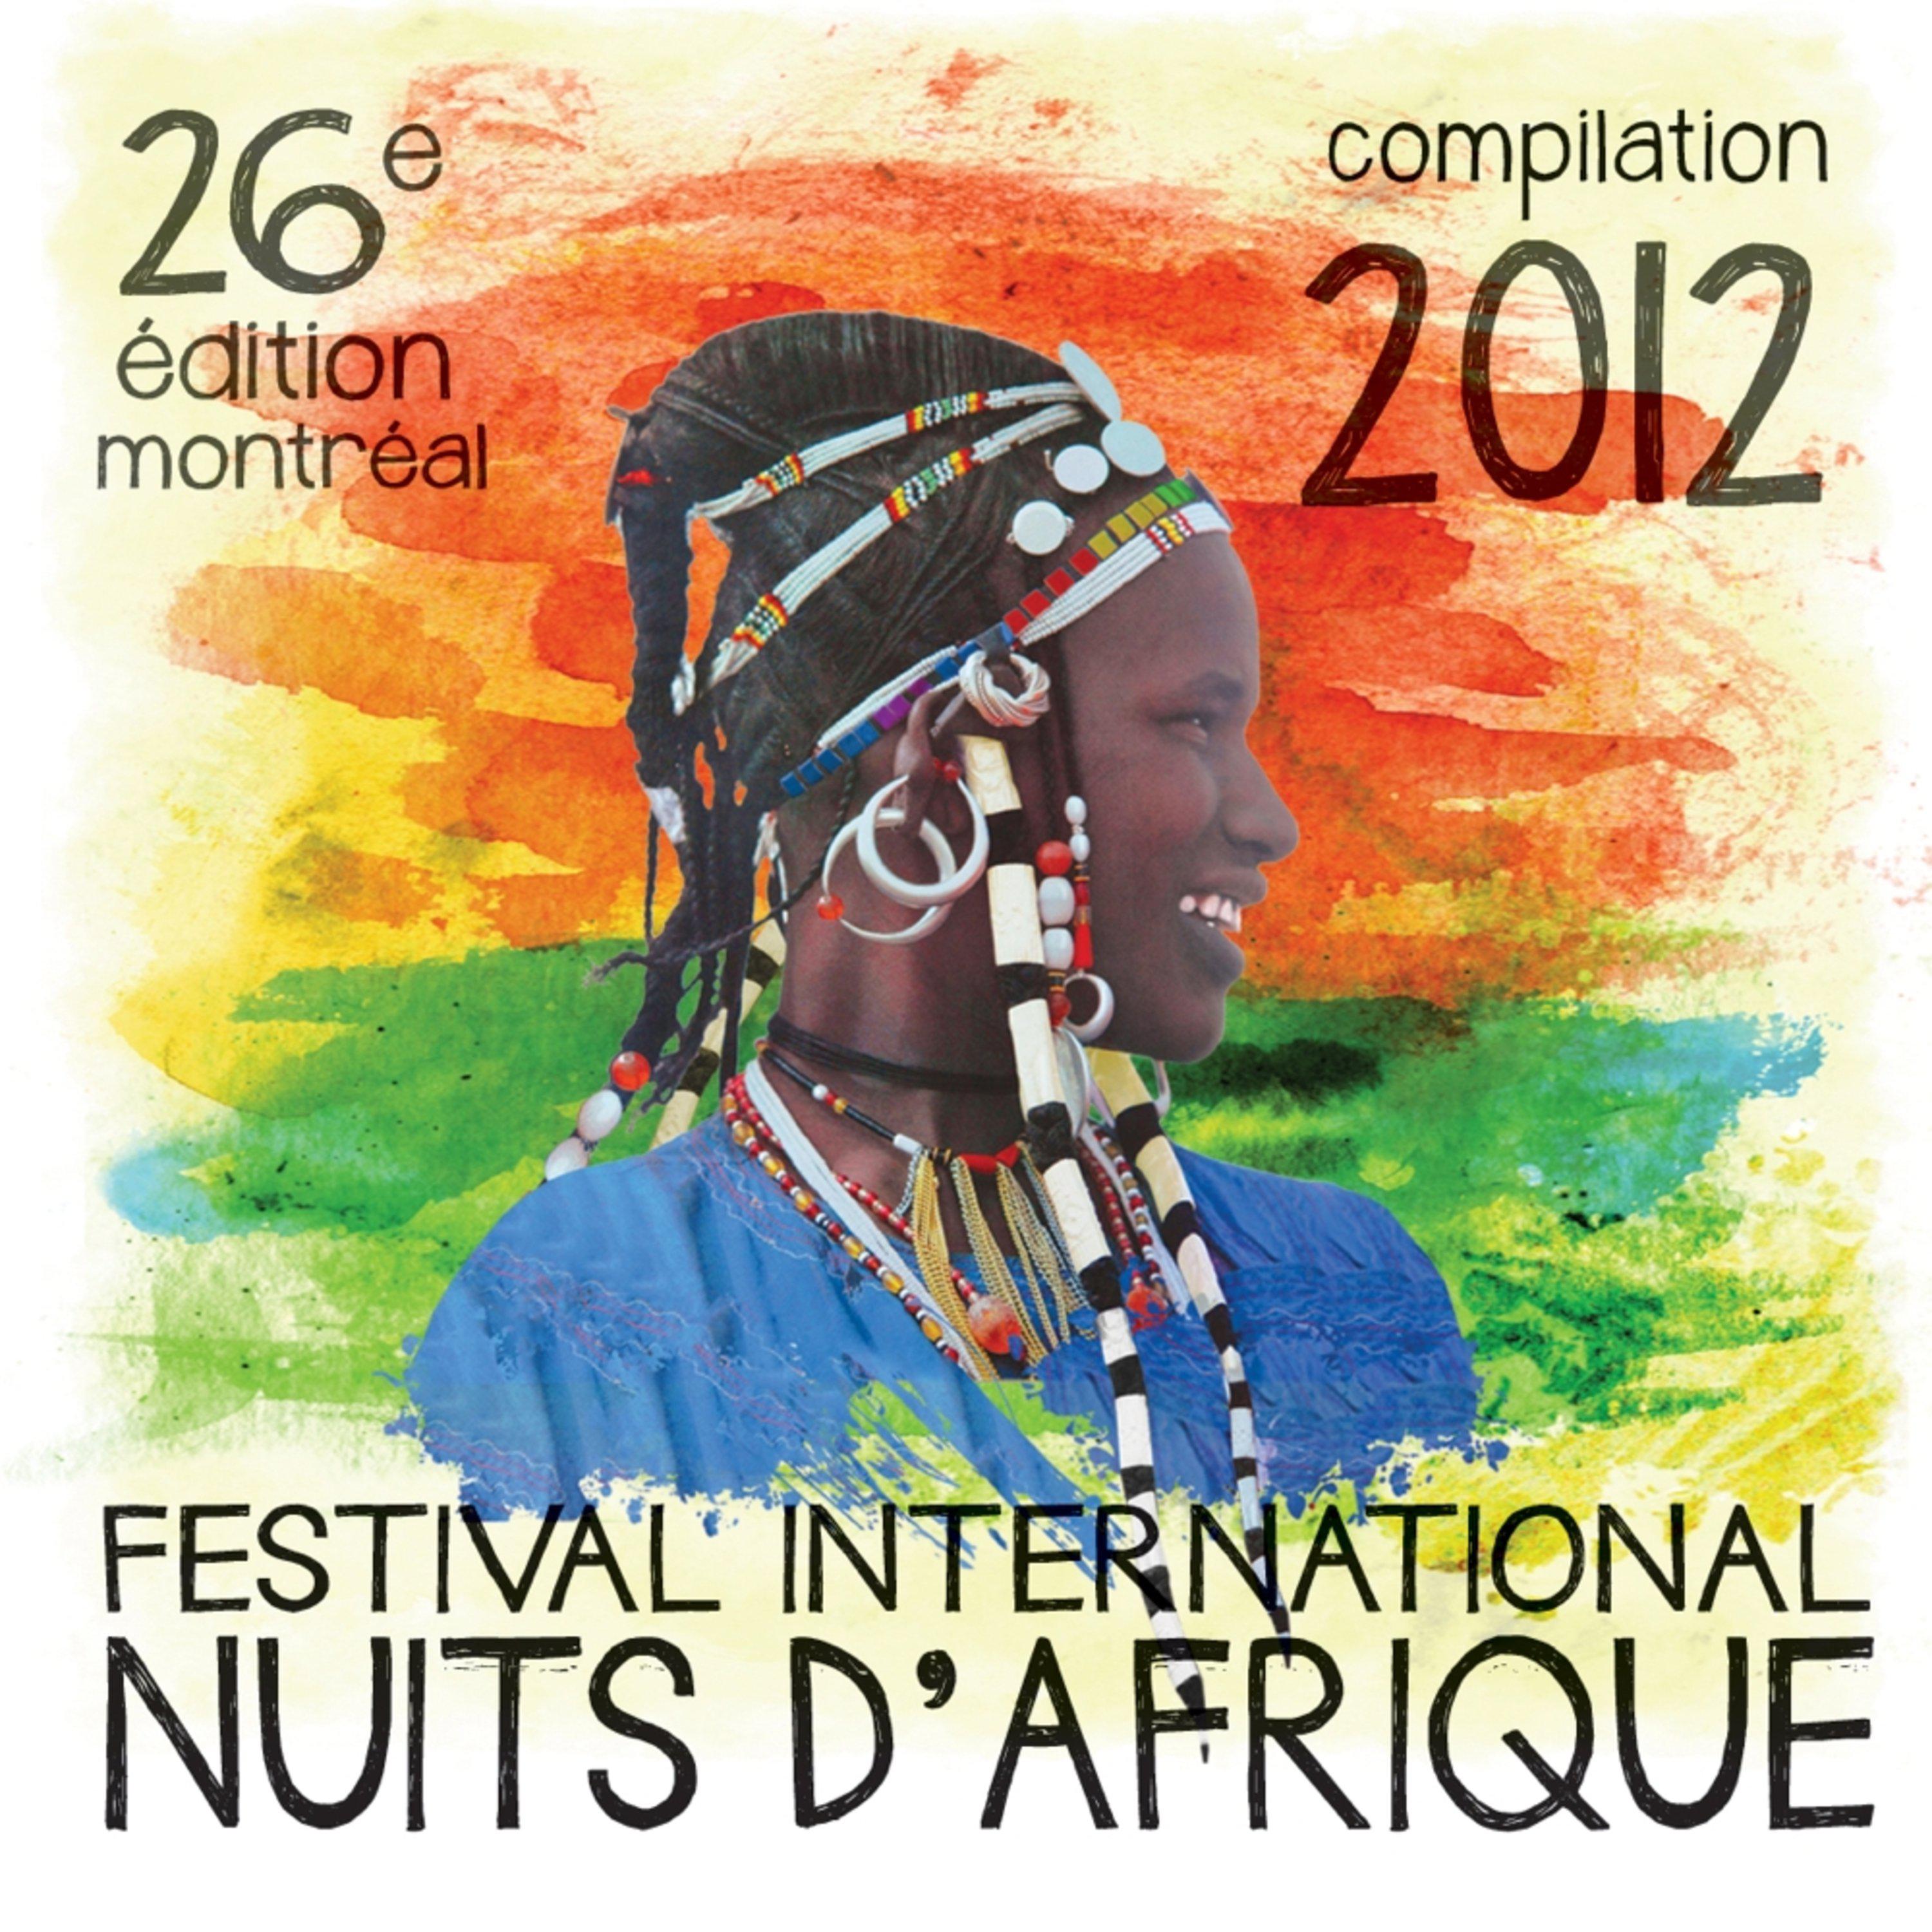 Festival International Nuits d' Afrique, 26e e dition  Compilation 2012